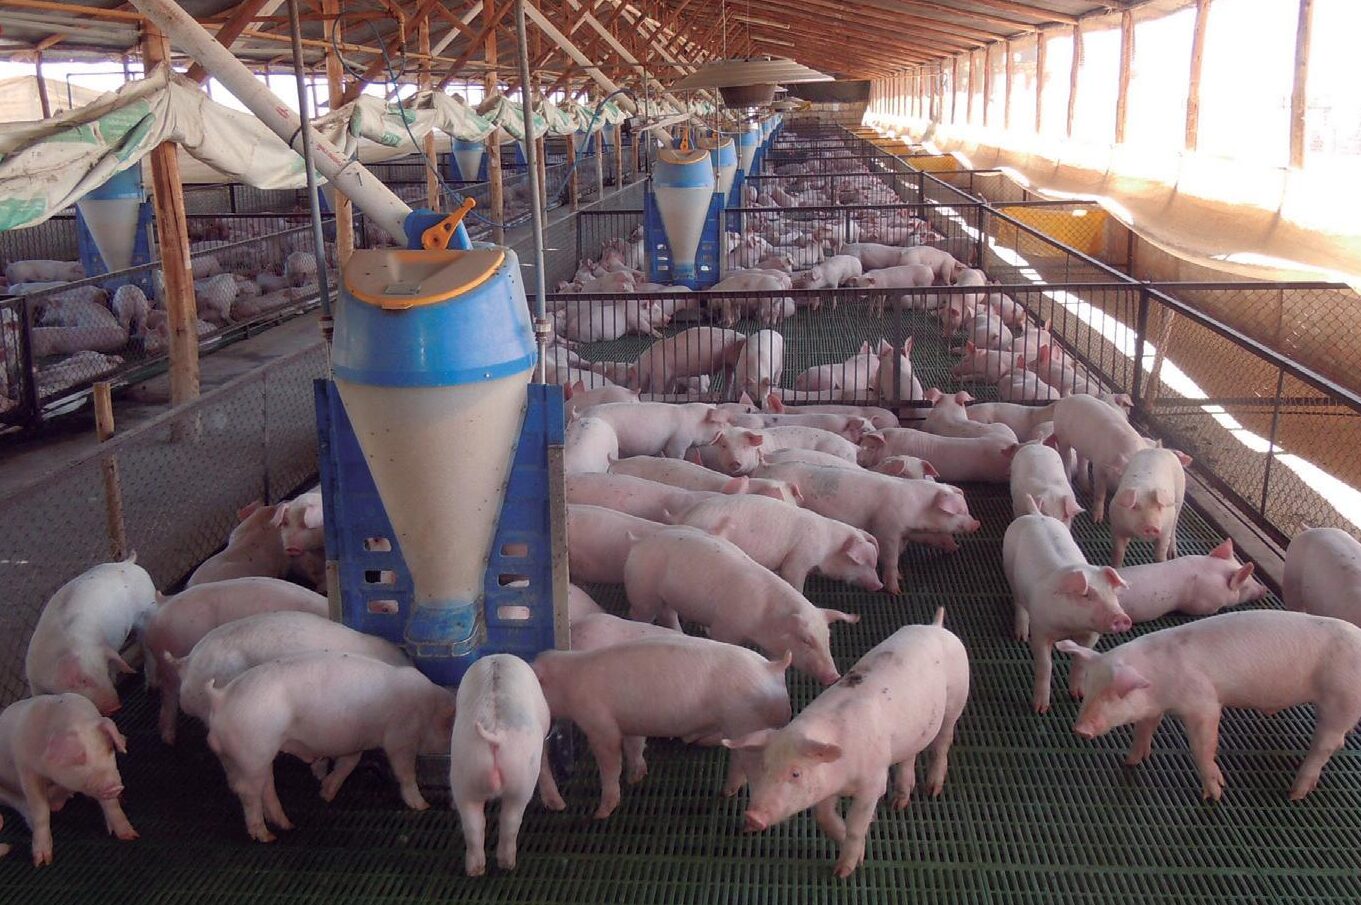 Oportunidades en rejillas para cerdos de segunda mano: encuentra la mejor opción para tu granja